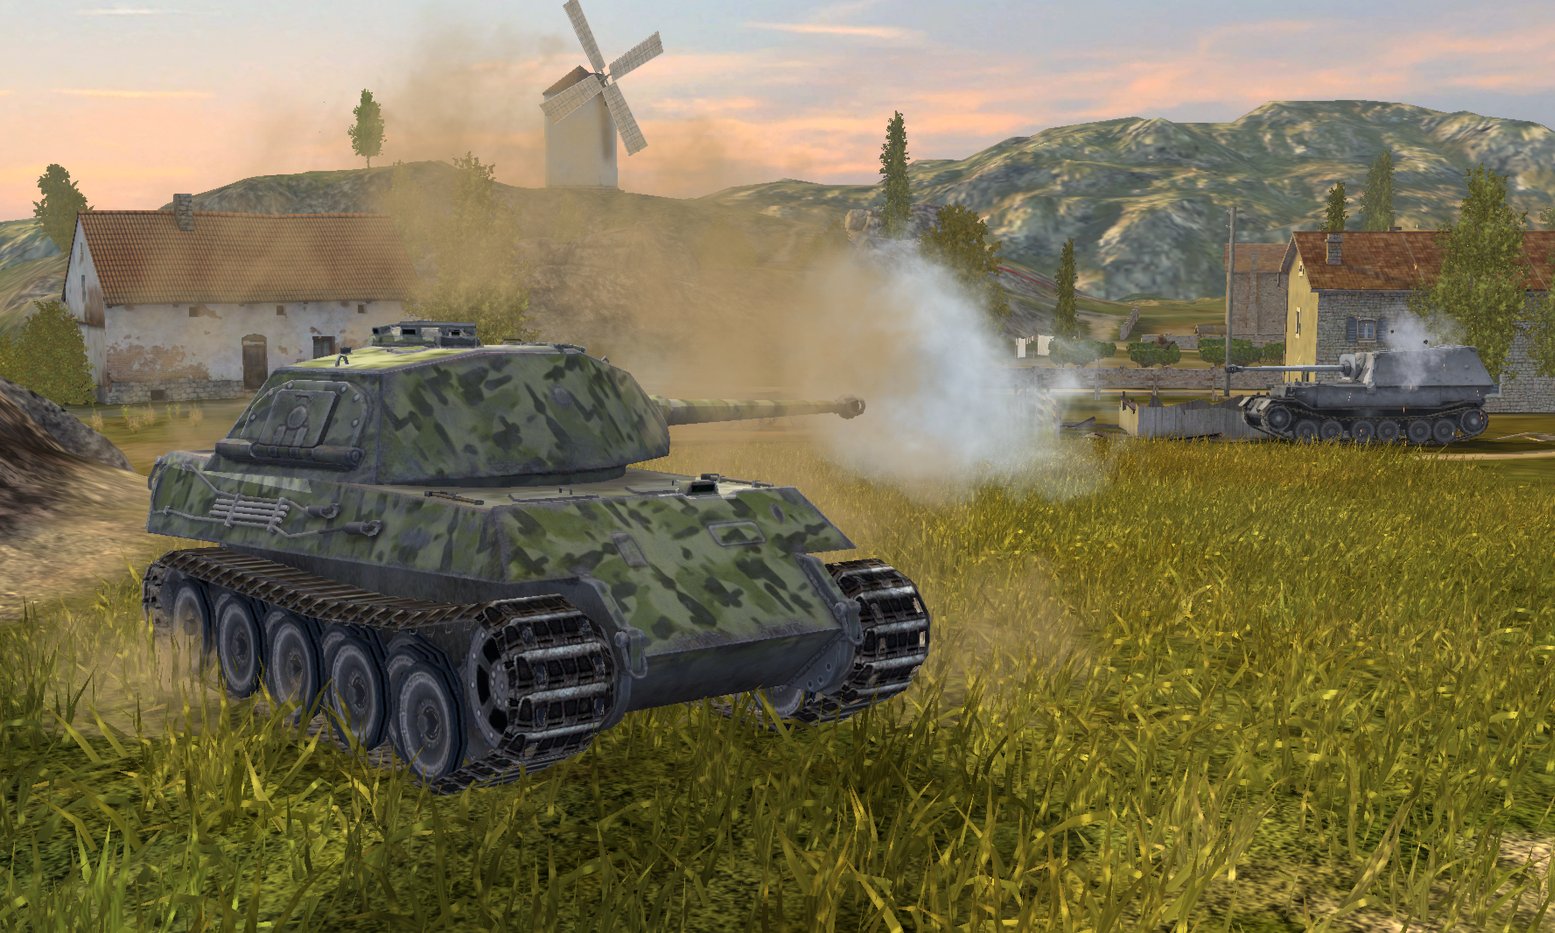 World of Tanks Blitz - Gameplay Tips for Beginners
